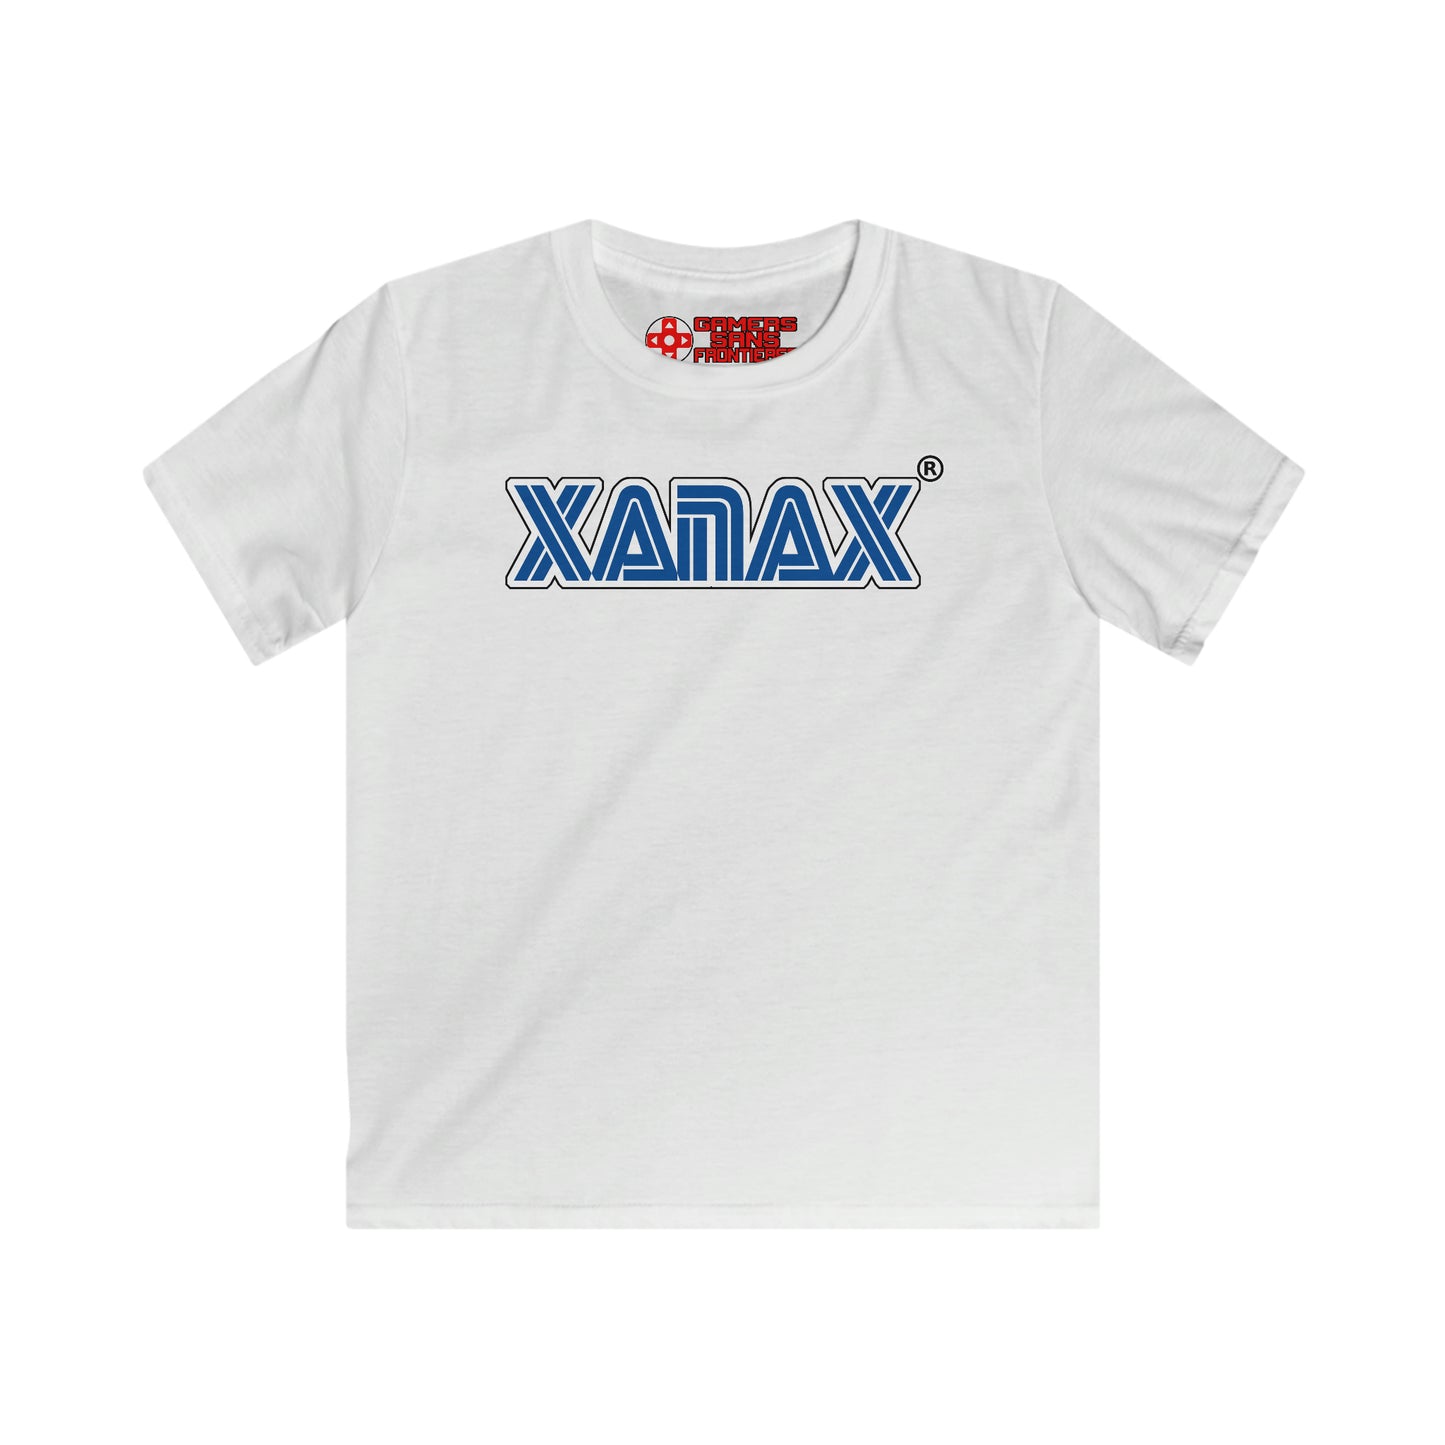 Kids' Tee - XANAX